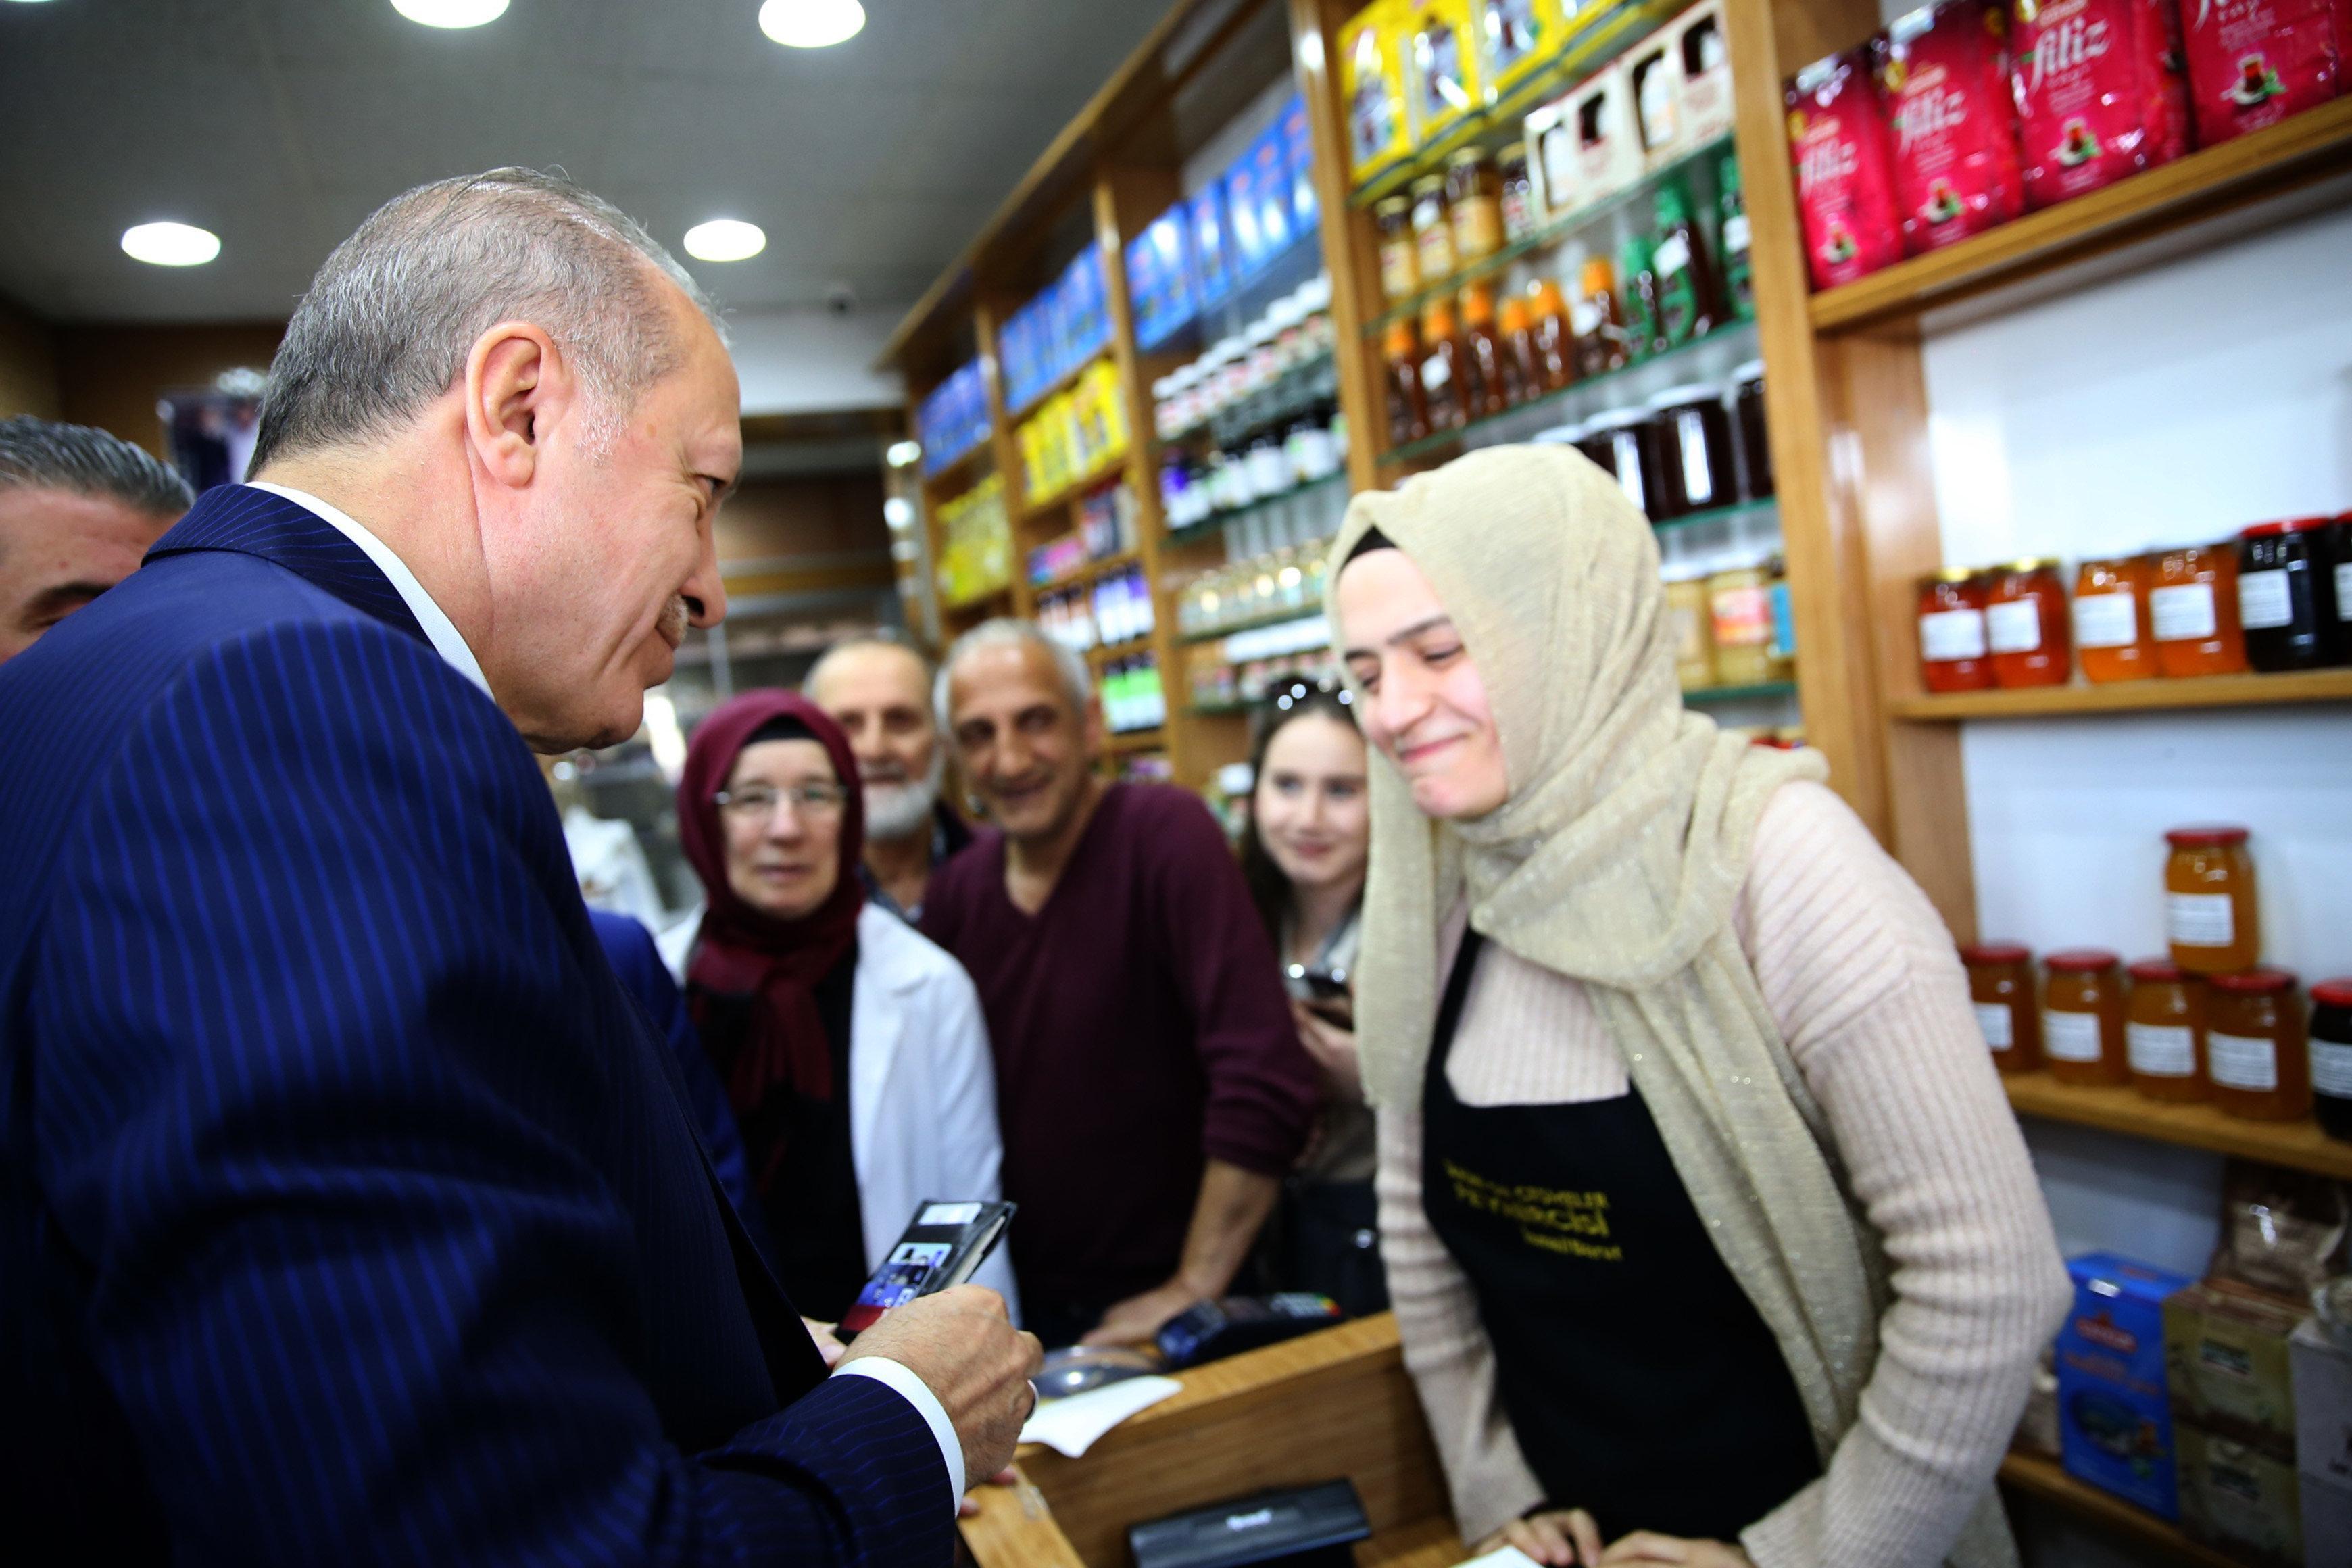 Cumhurbaşkanı Erdoğan şarküteriye girip alışveriş yaptı